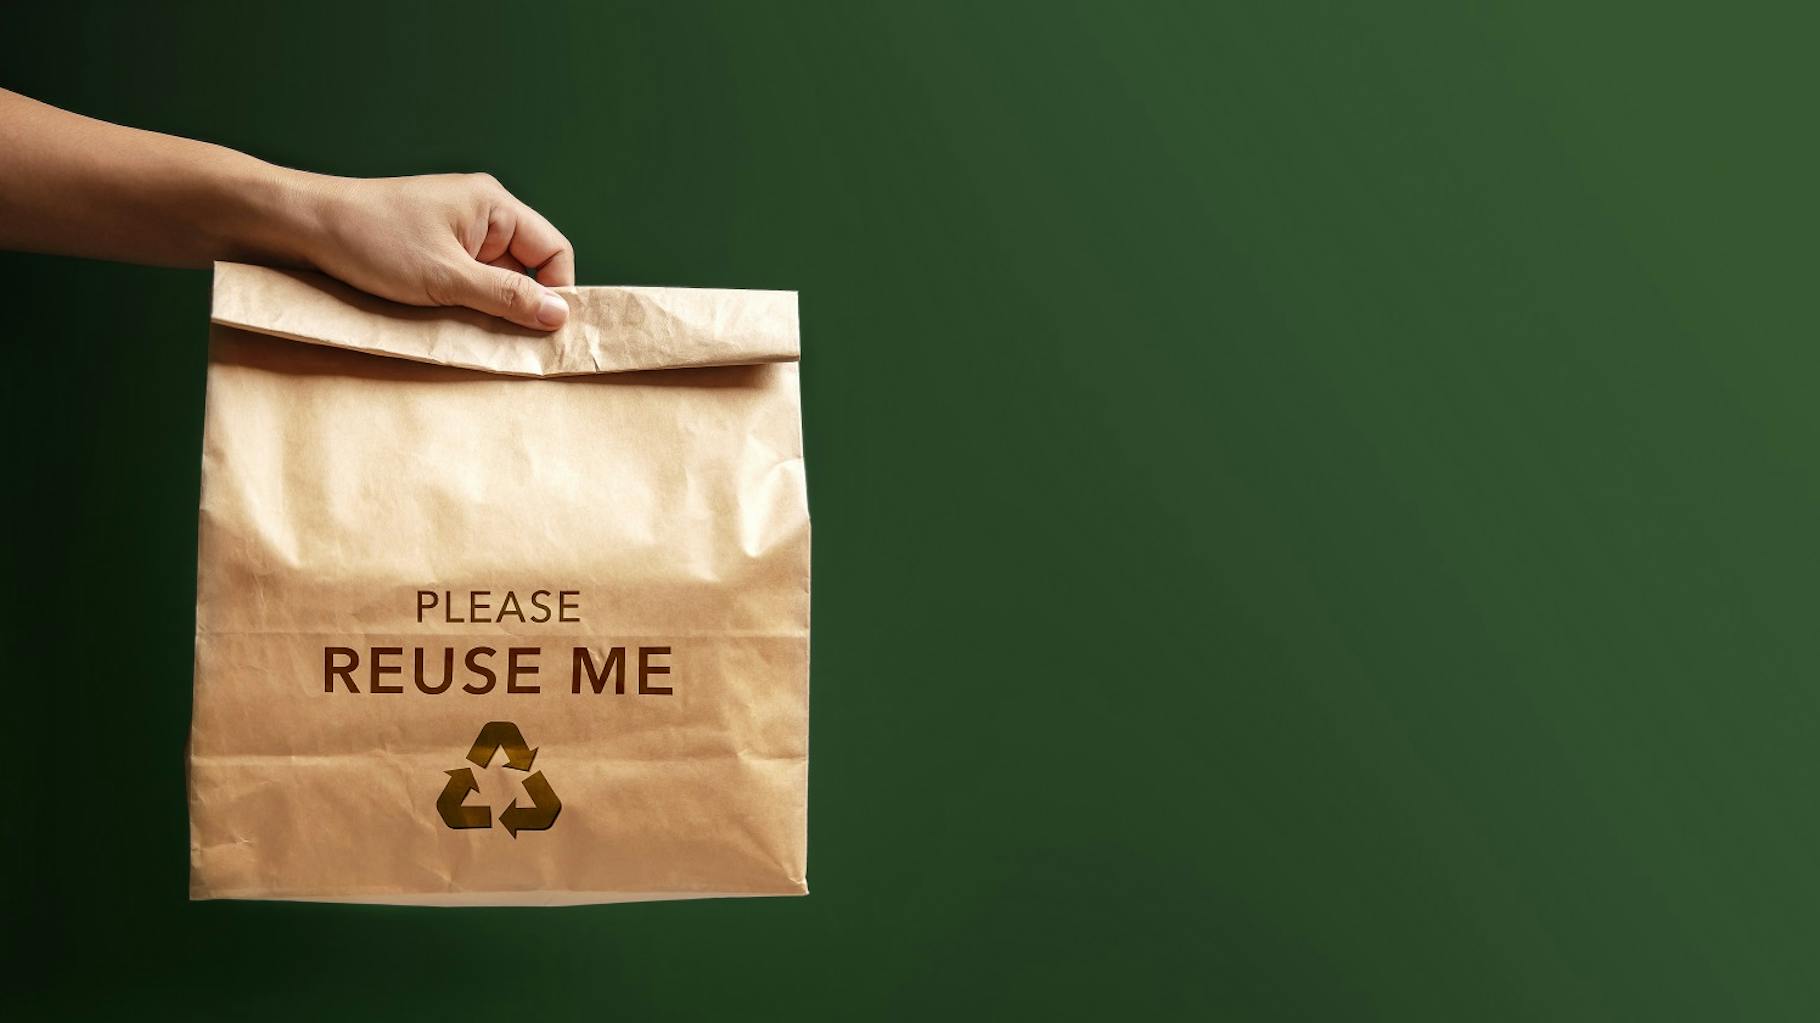 Eine zusammengerollte Papiertüte, die von einer Frauenhand gehalten wird und die Aufschrift "Please release me" trägt, illustriert das Thema der Nachhaltigkeitsberichtspflicht